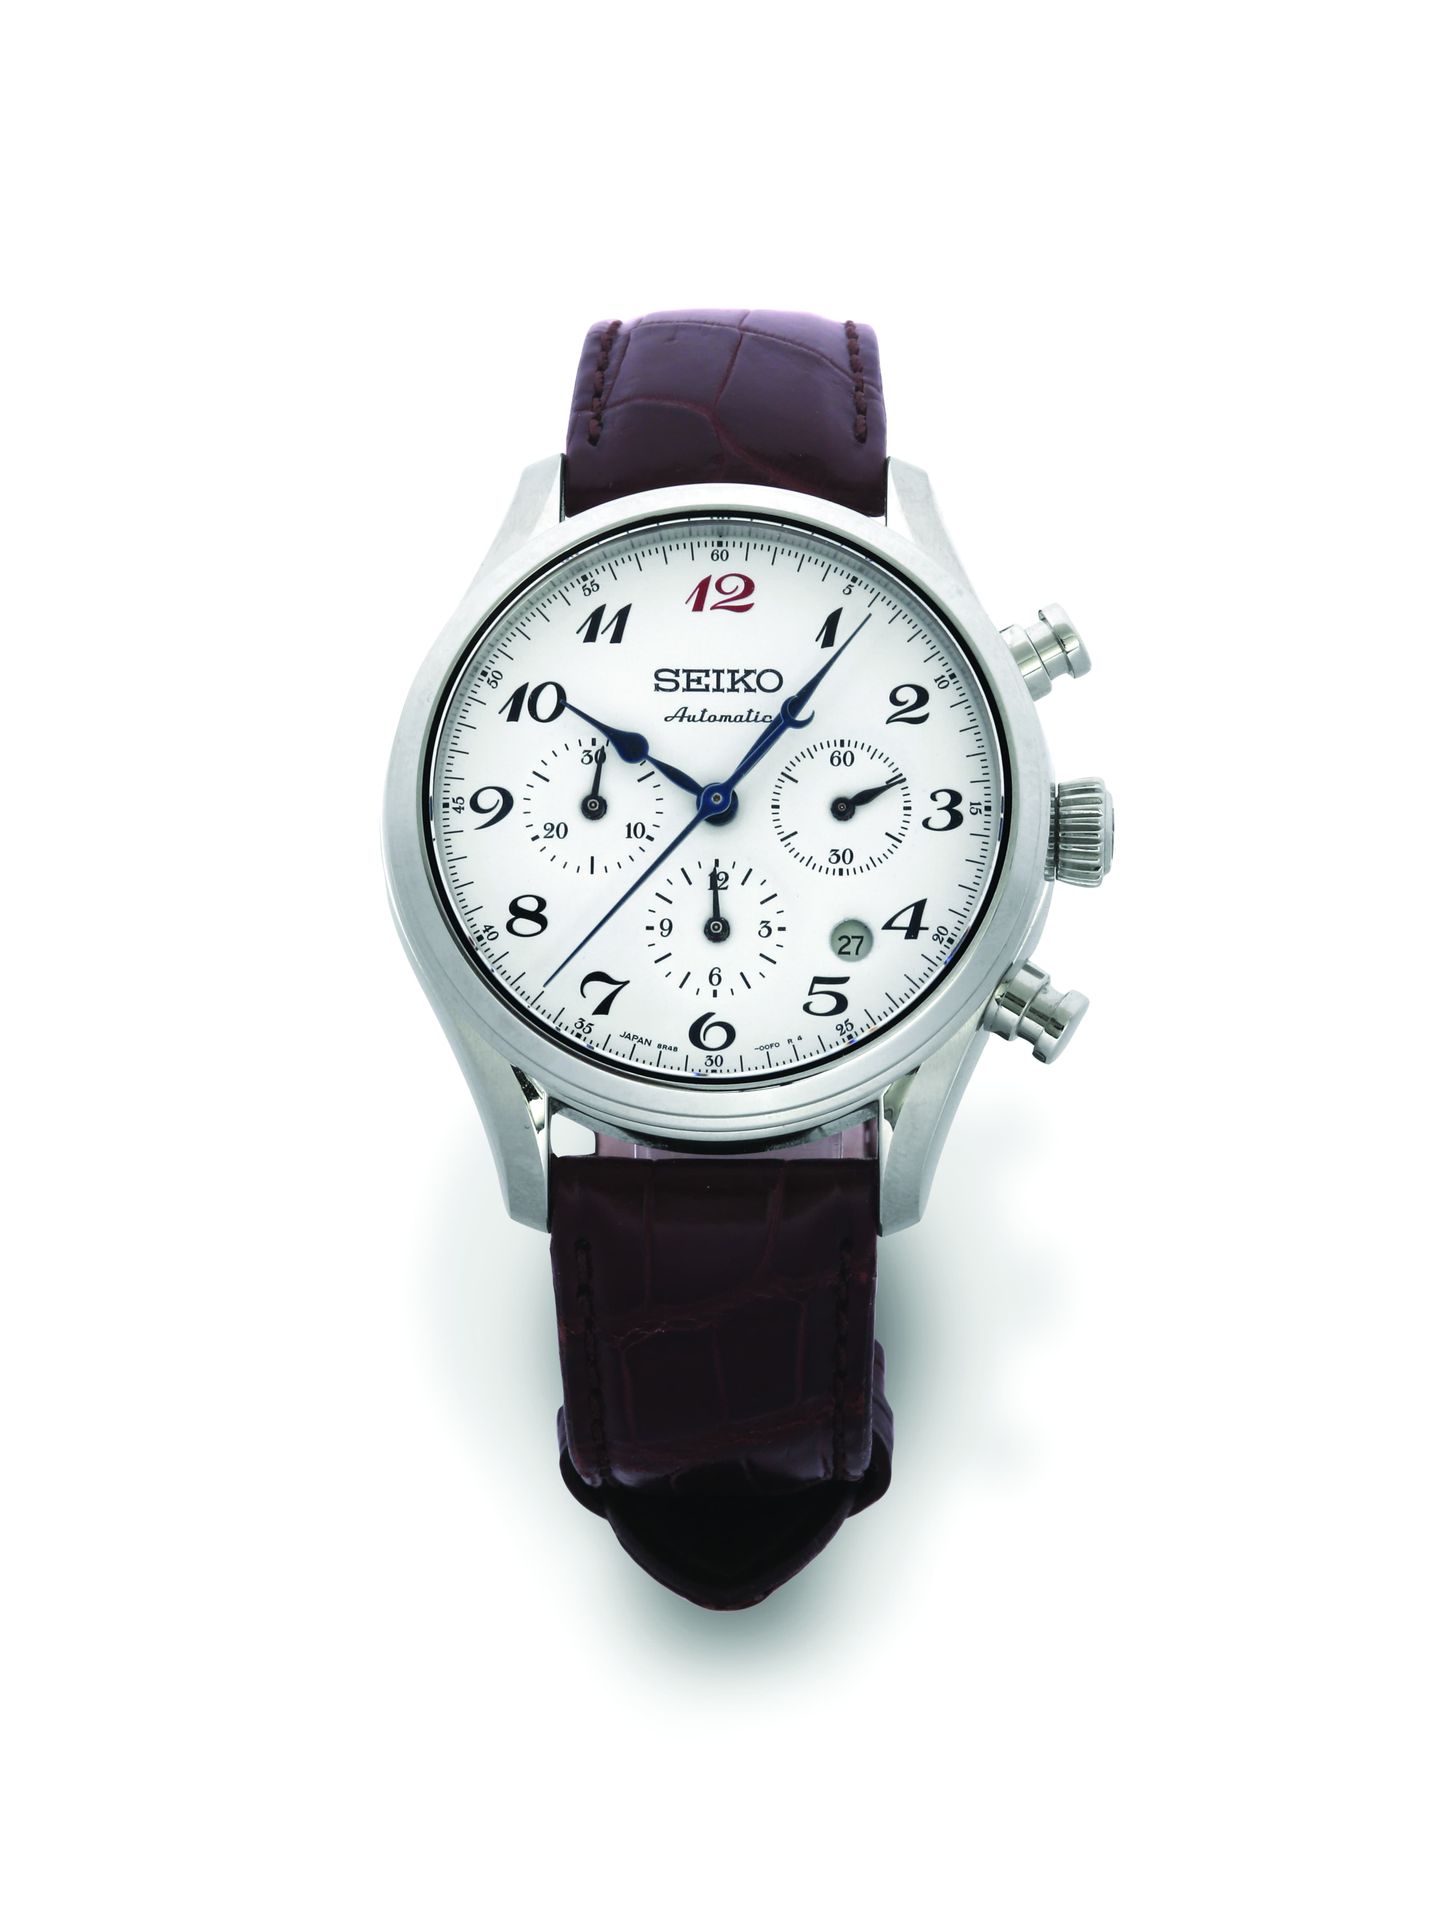 SEIKO Présage cronógrafo edición limitada 0751/1000
Reloj de vestir de acero con&hellip;